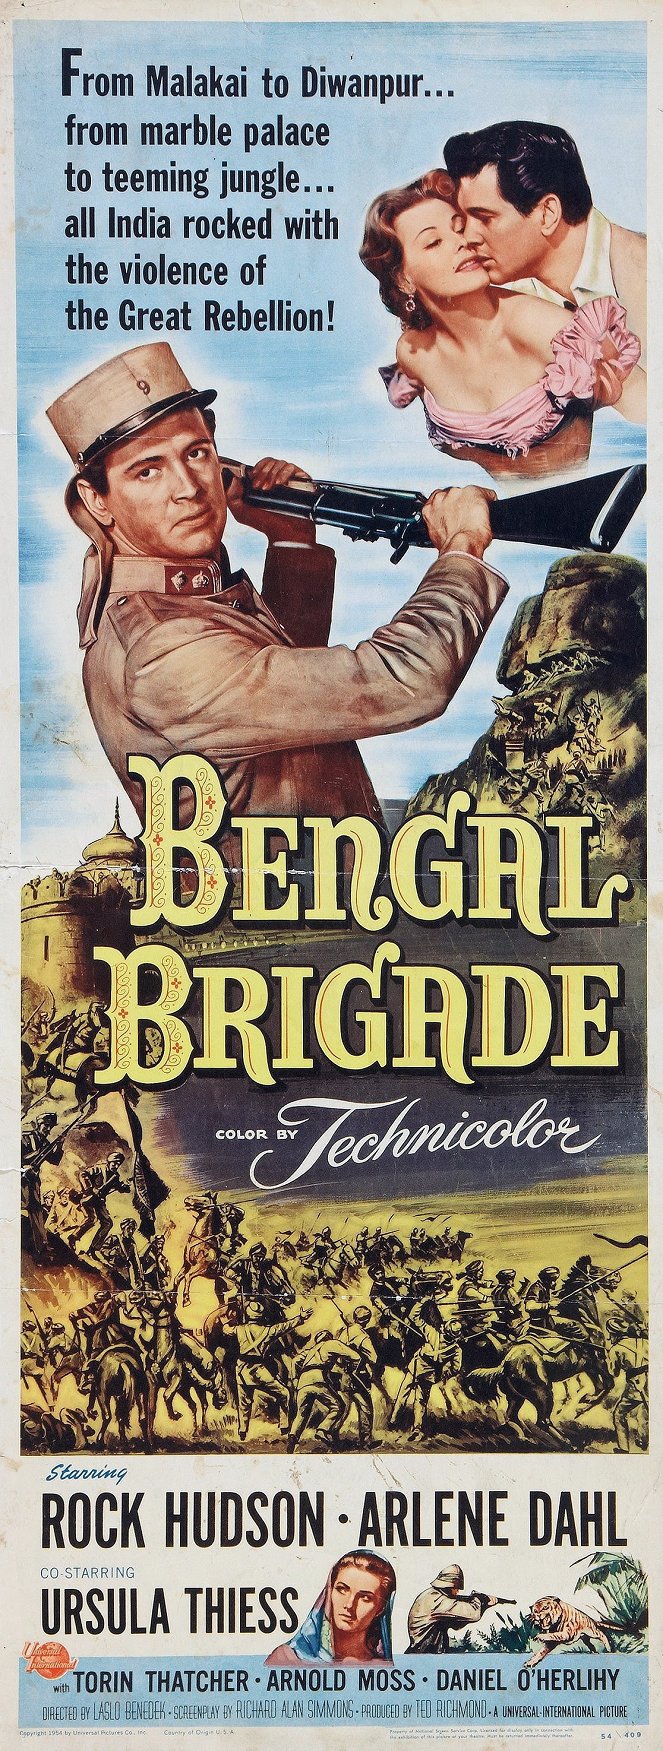 Bengal Brigade - Posters